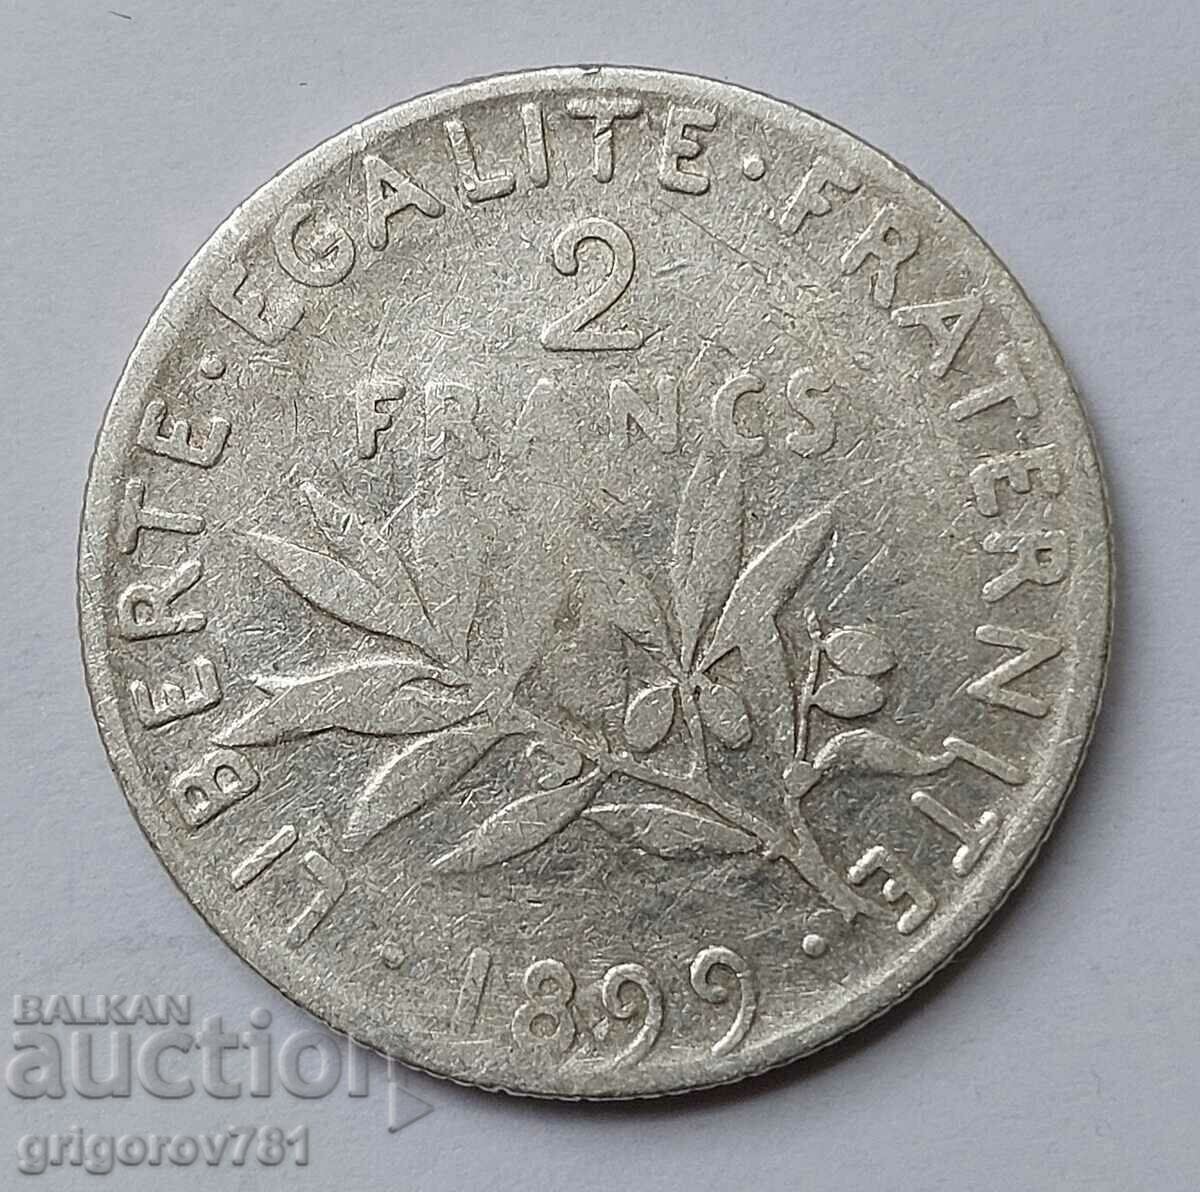 2 Φράγκα Ασήμι Γαλλία 1899 - Ασημένιο νόμισμα #41